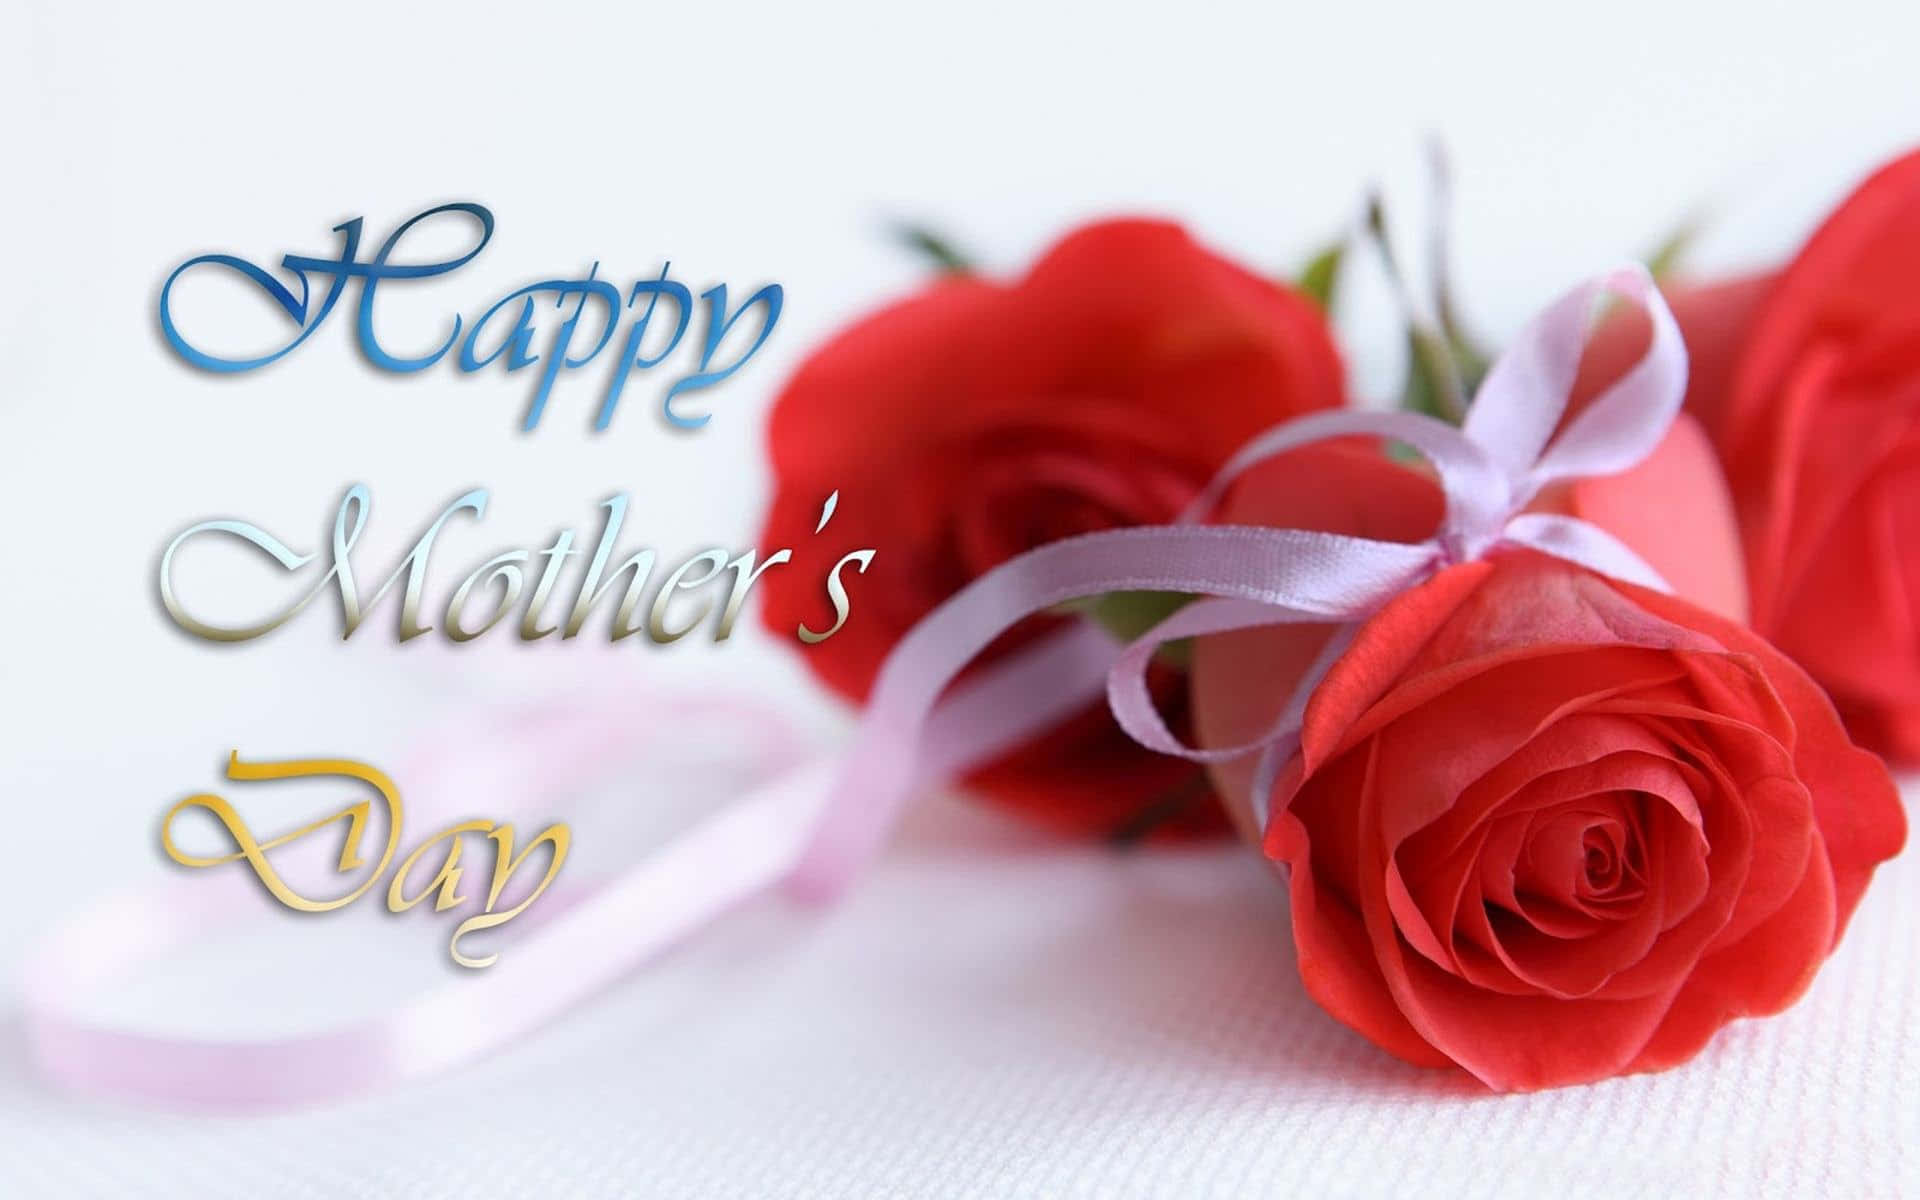 Fejr denne særlige dag sammen med din kære mor.